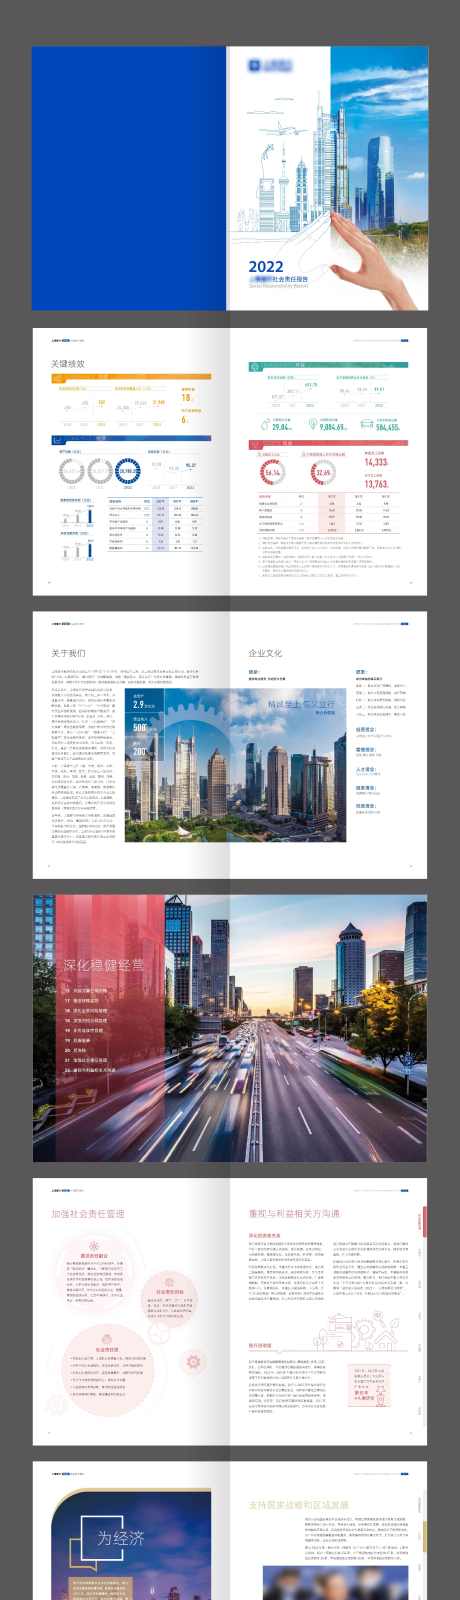 上海金融银行数据企业年度报告画册_源文件下载_AI格式_2363X22357像素-报告,画册,企业,年度,银行,数据,金融,上海-作品编号:2024010211299925-志设-zs9.com